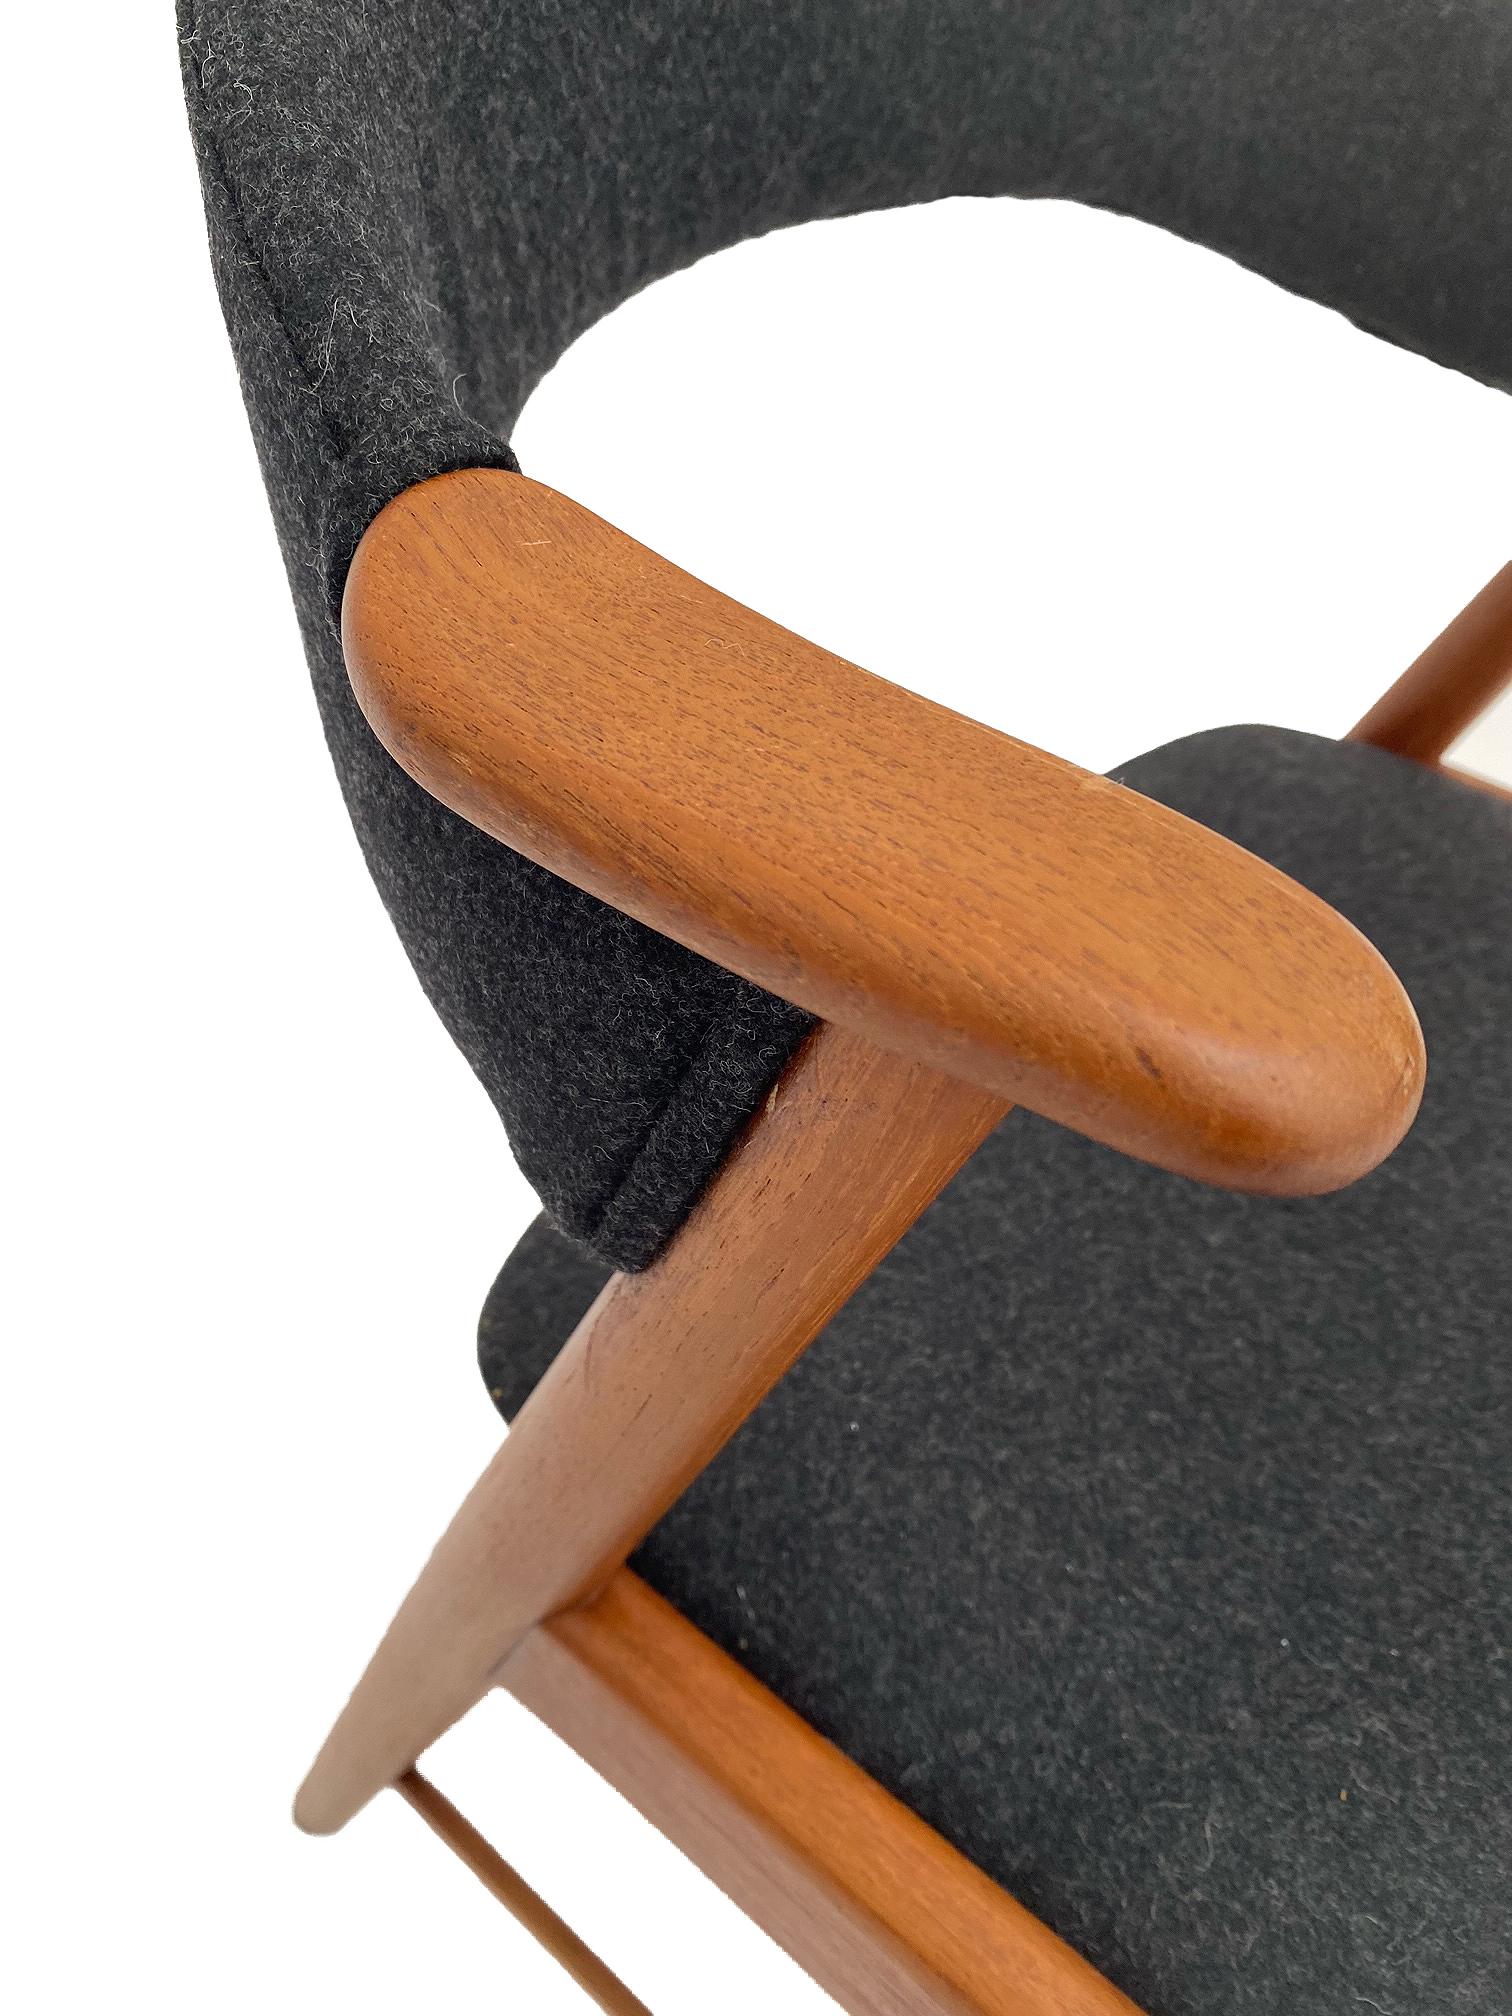 Kai Kristiansen Model 32 Teak and Charcoal Wool Desk Chair, Denmark, 1960s 7